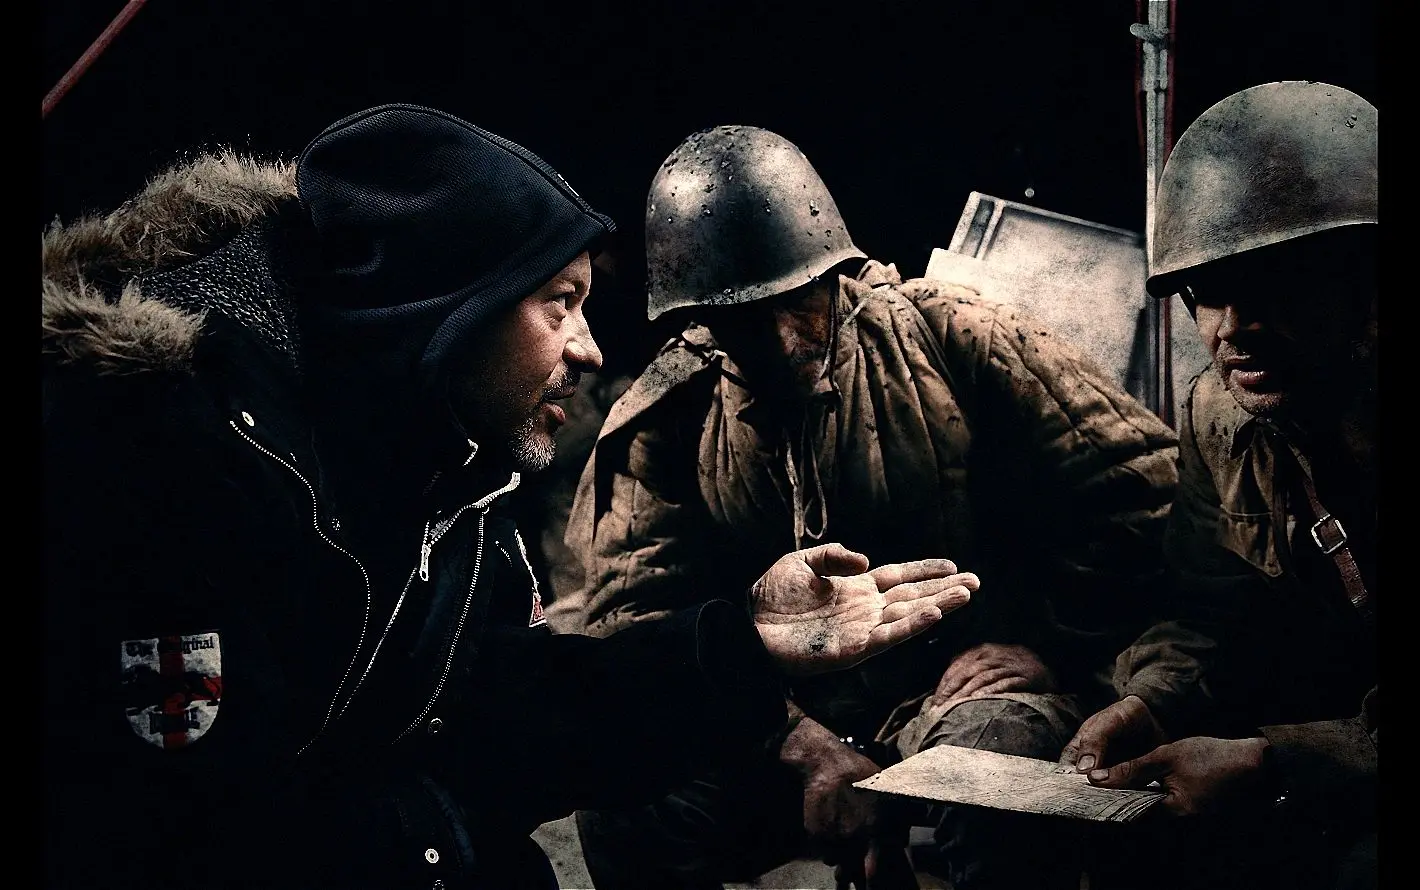 Un nouveau “Stalingrad”, super-production russe tournée en 3D